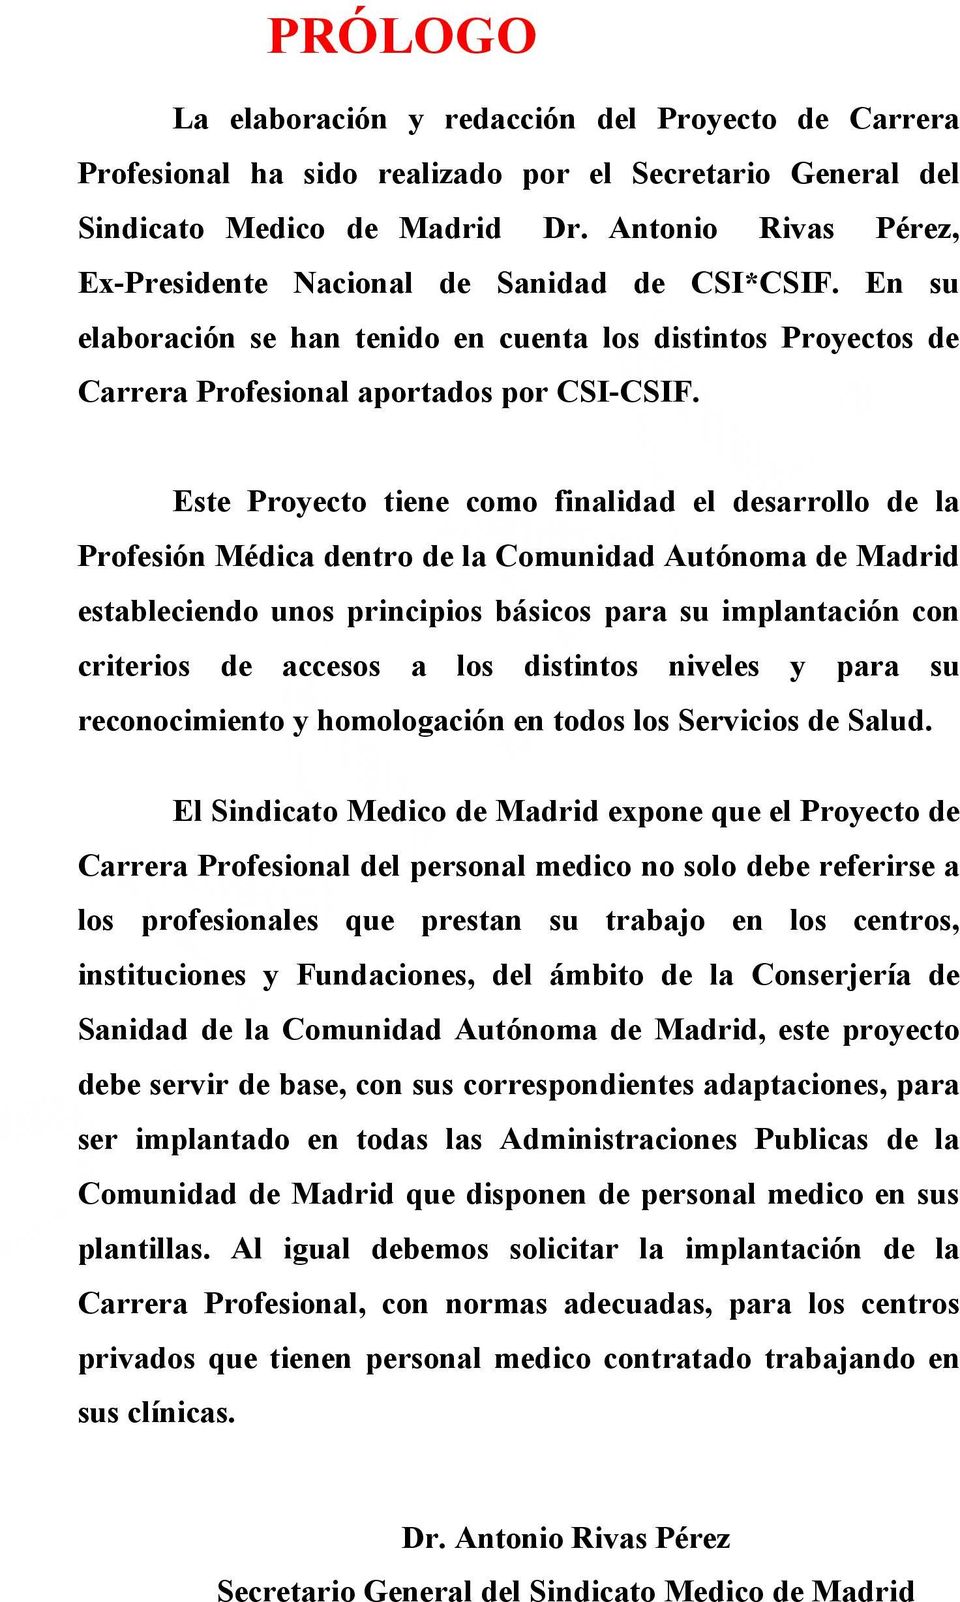 Este Proyecto tiene como finalidad el desarrollo de la Profesión Médica dentro de la Comunidad Autónoma de Madrid estableciendo unos principios básicos para su implantación con criterios de accesos a